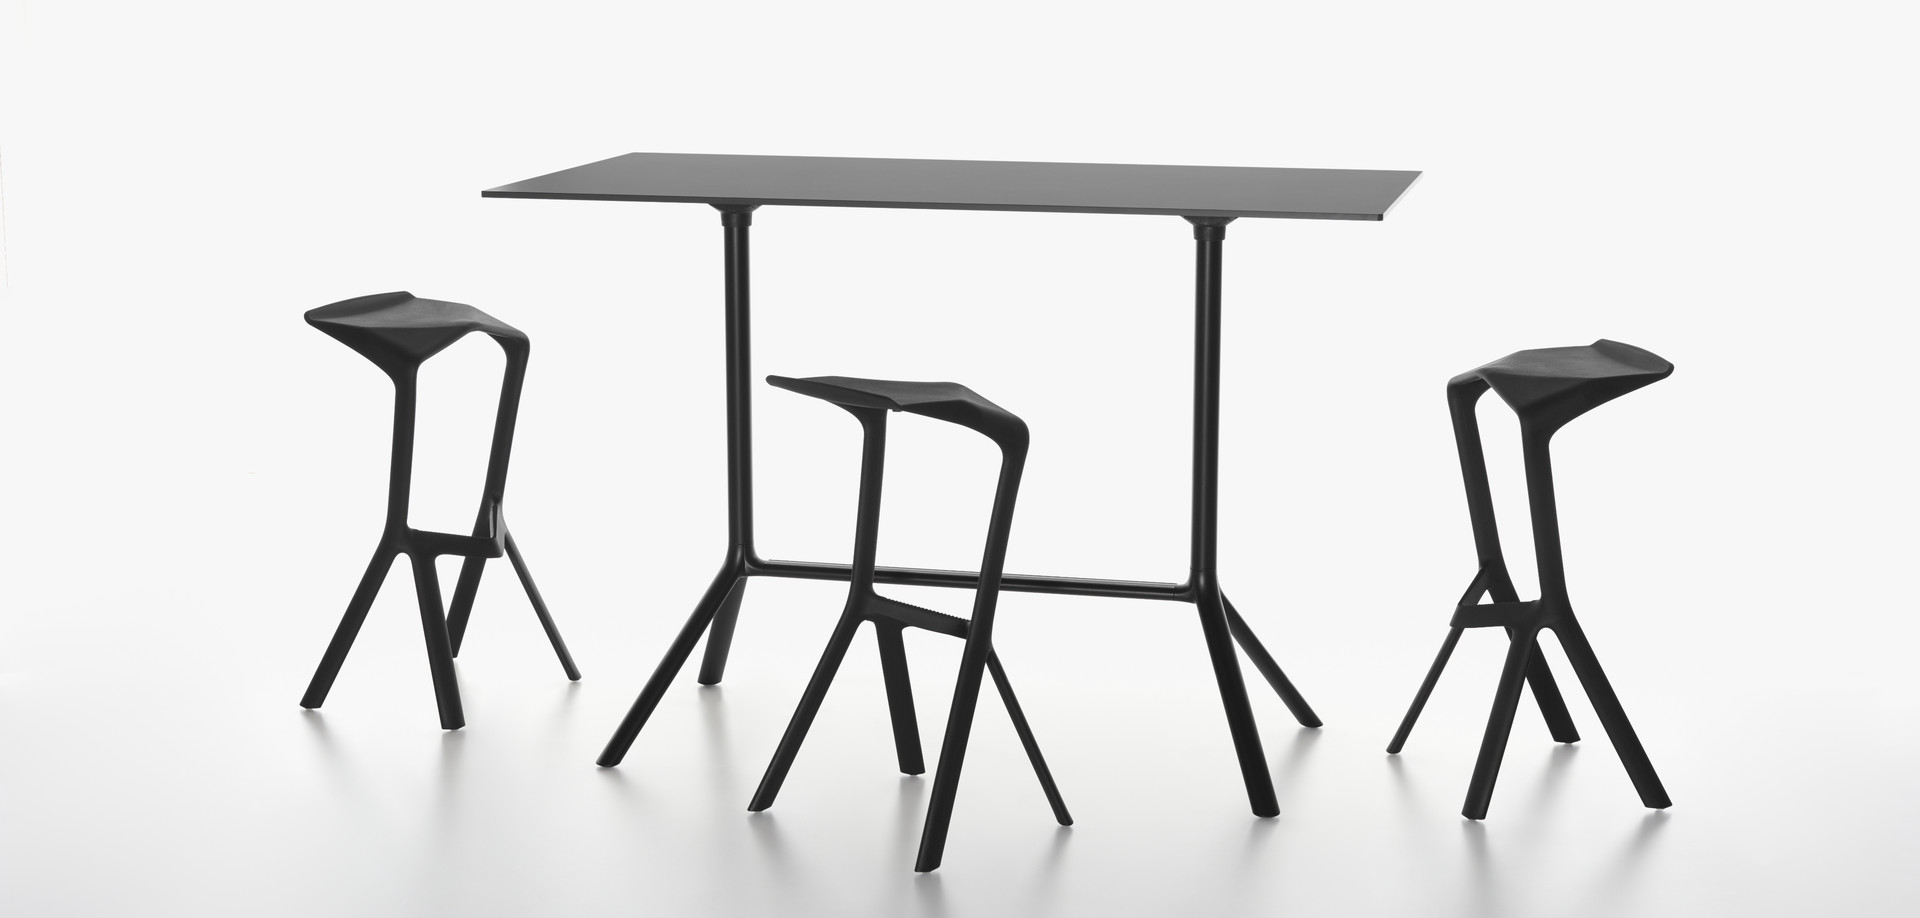 MIURA stool, black and MIURA table, black